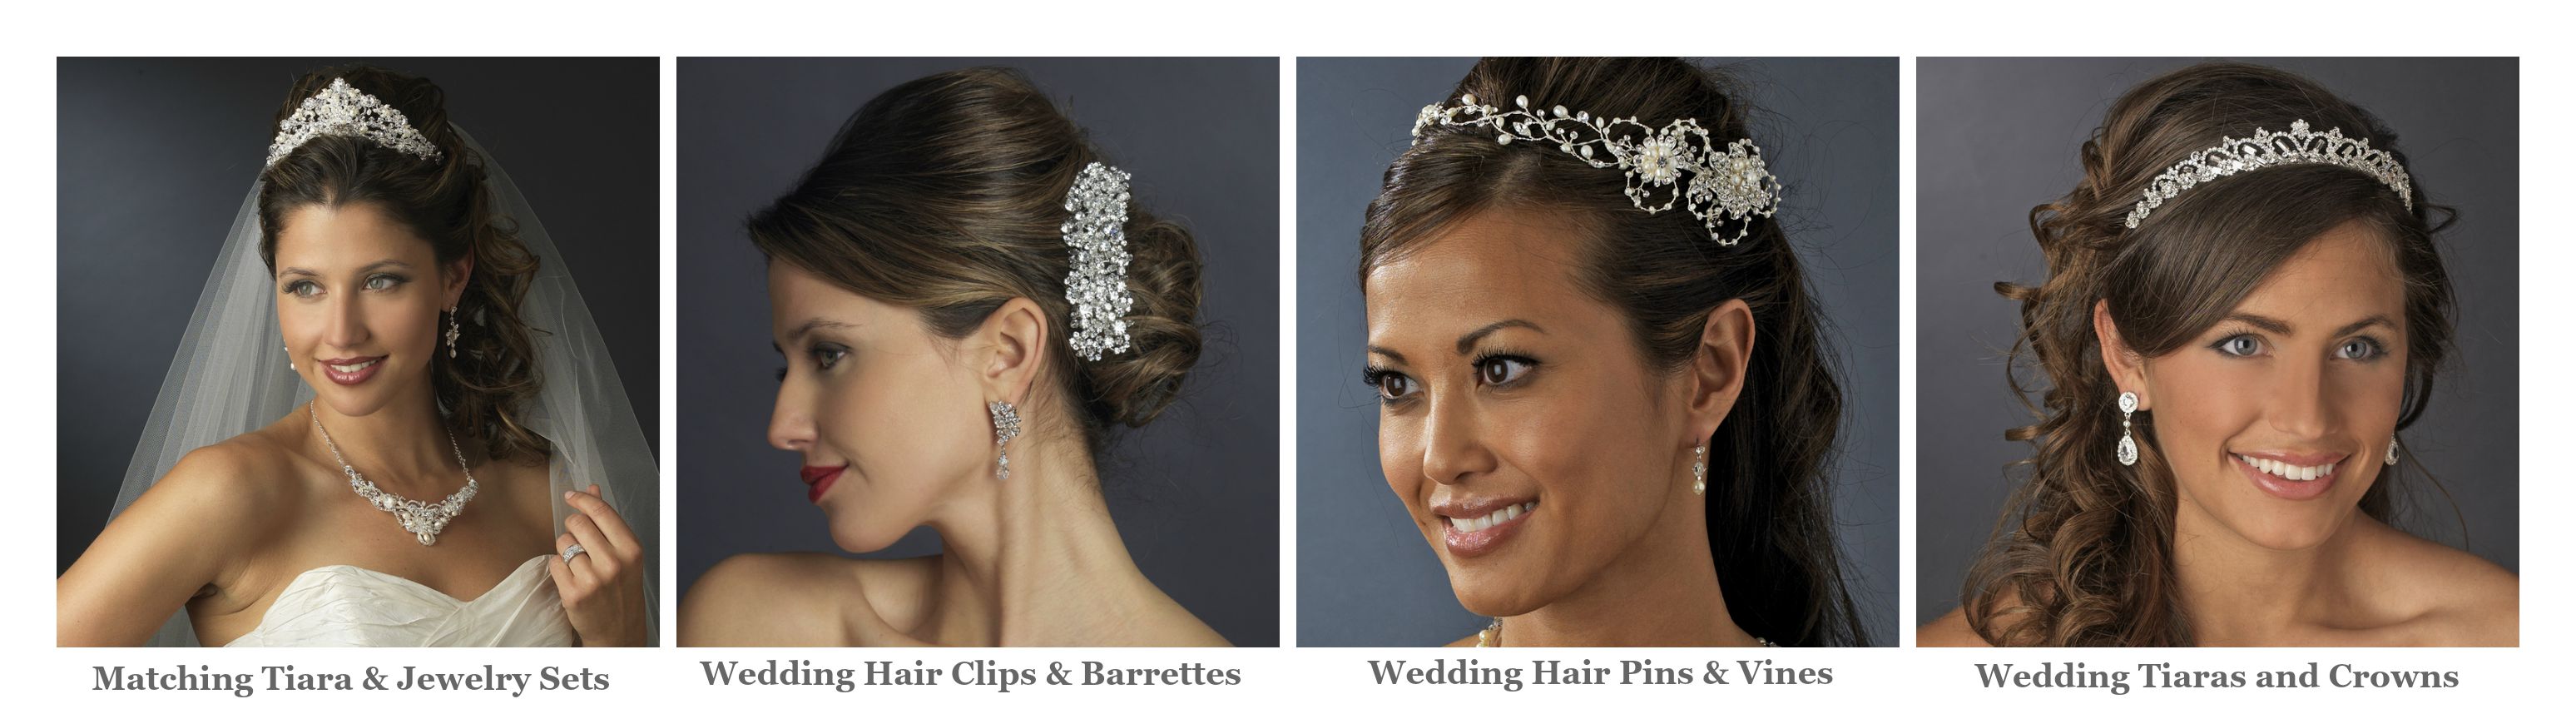 Fall Wedding Hair Accessories